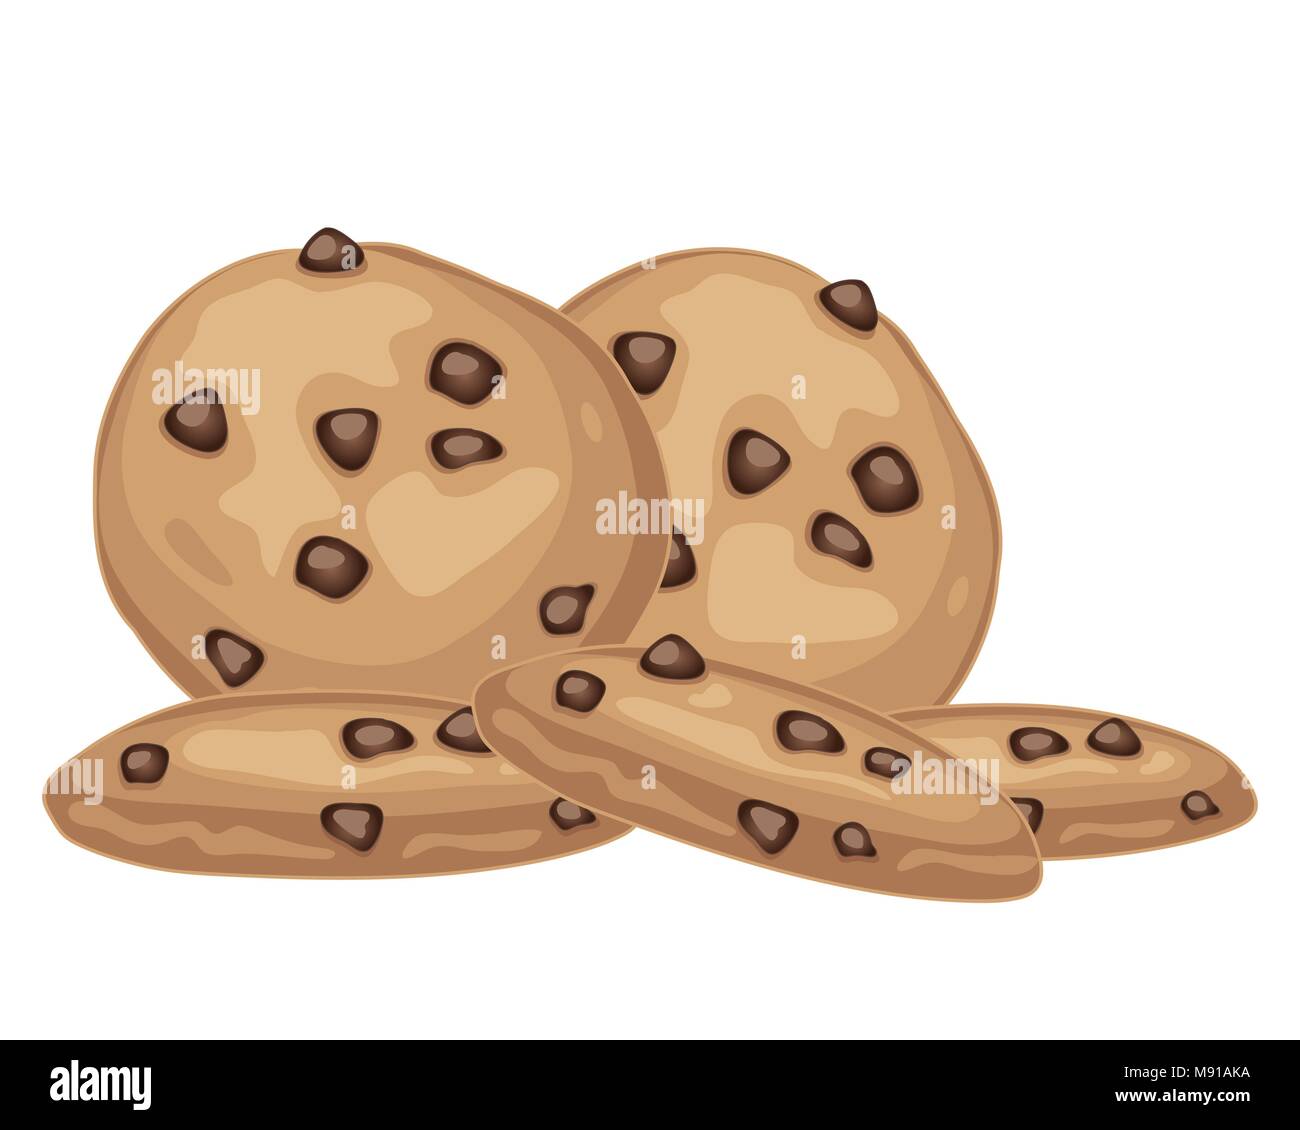 Un vecteur illustration en eps 10 format d'un tas de délicieux choc chip cookies sur un fond blanc Illustration de Vecteur